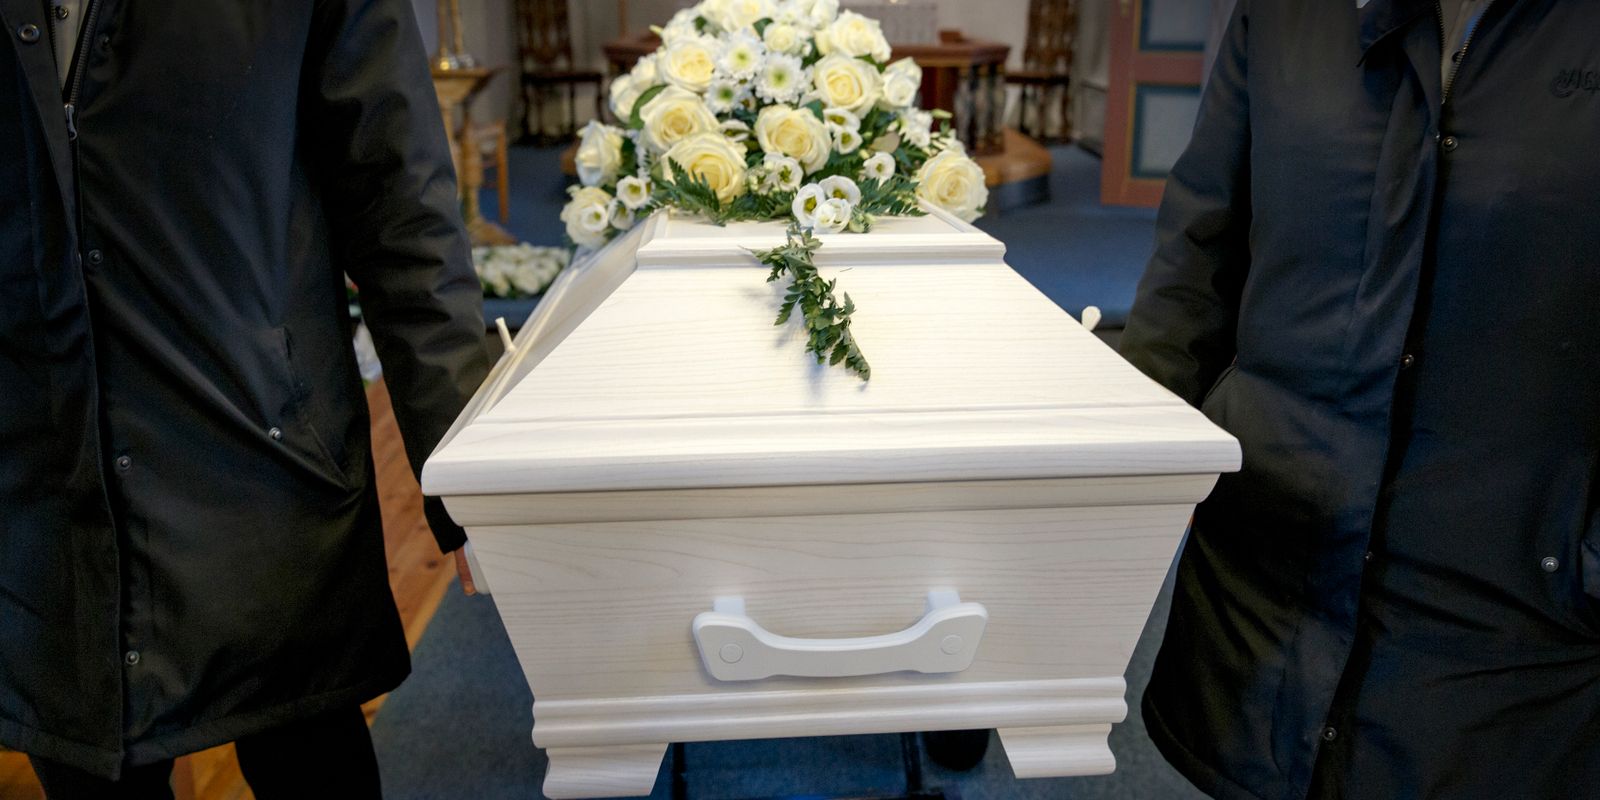 begravningsbyrå förväxlade döda – begravde fel person